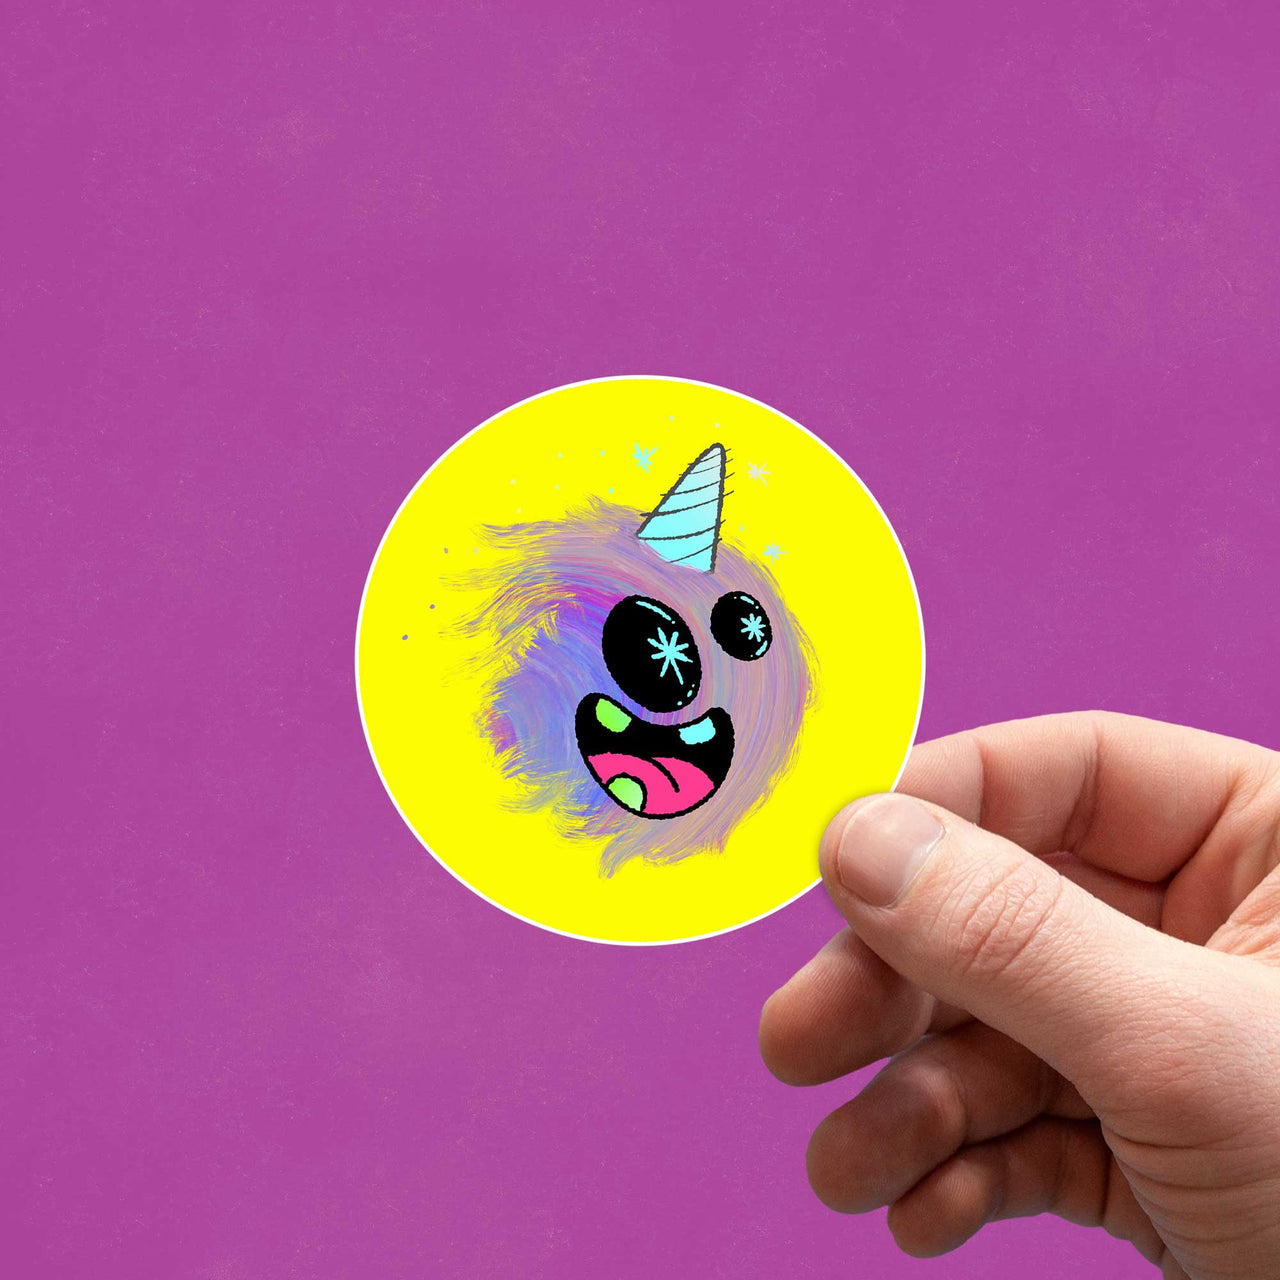 holographic unicorn creature sticker